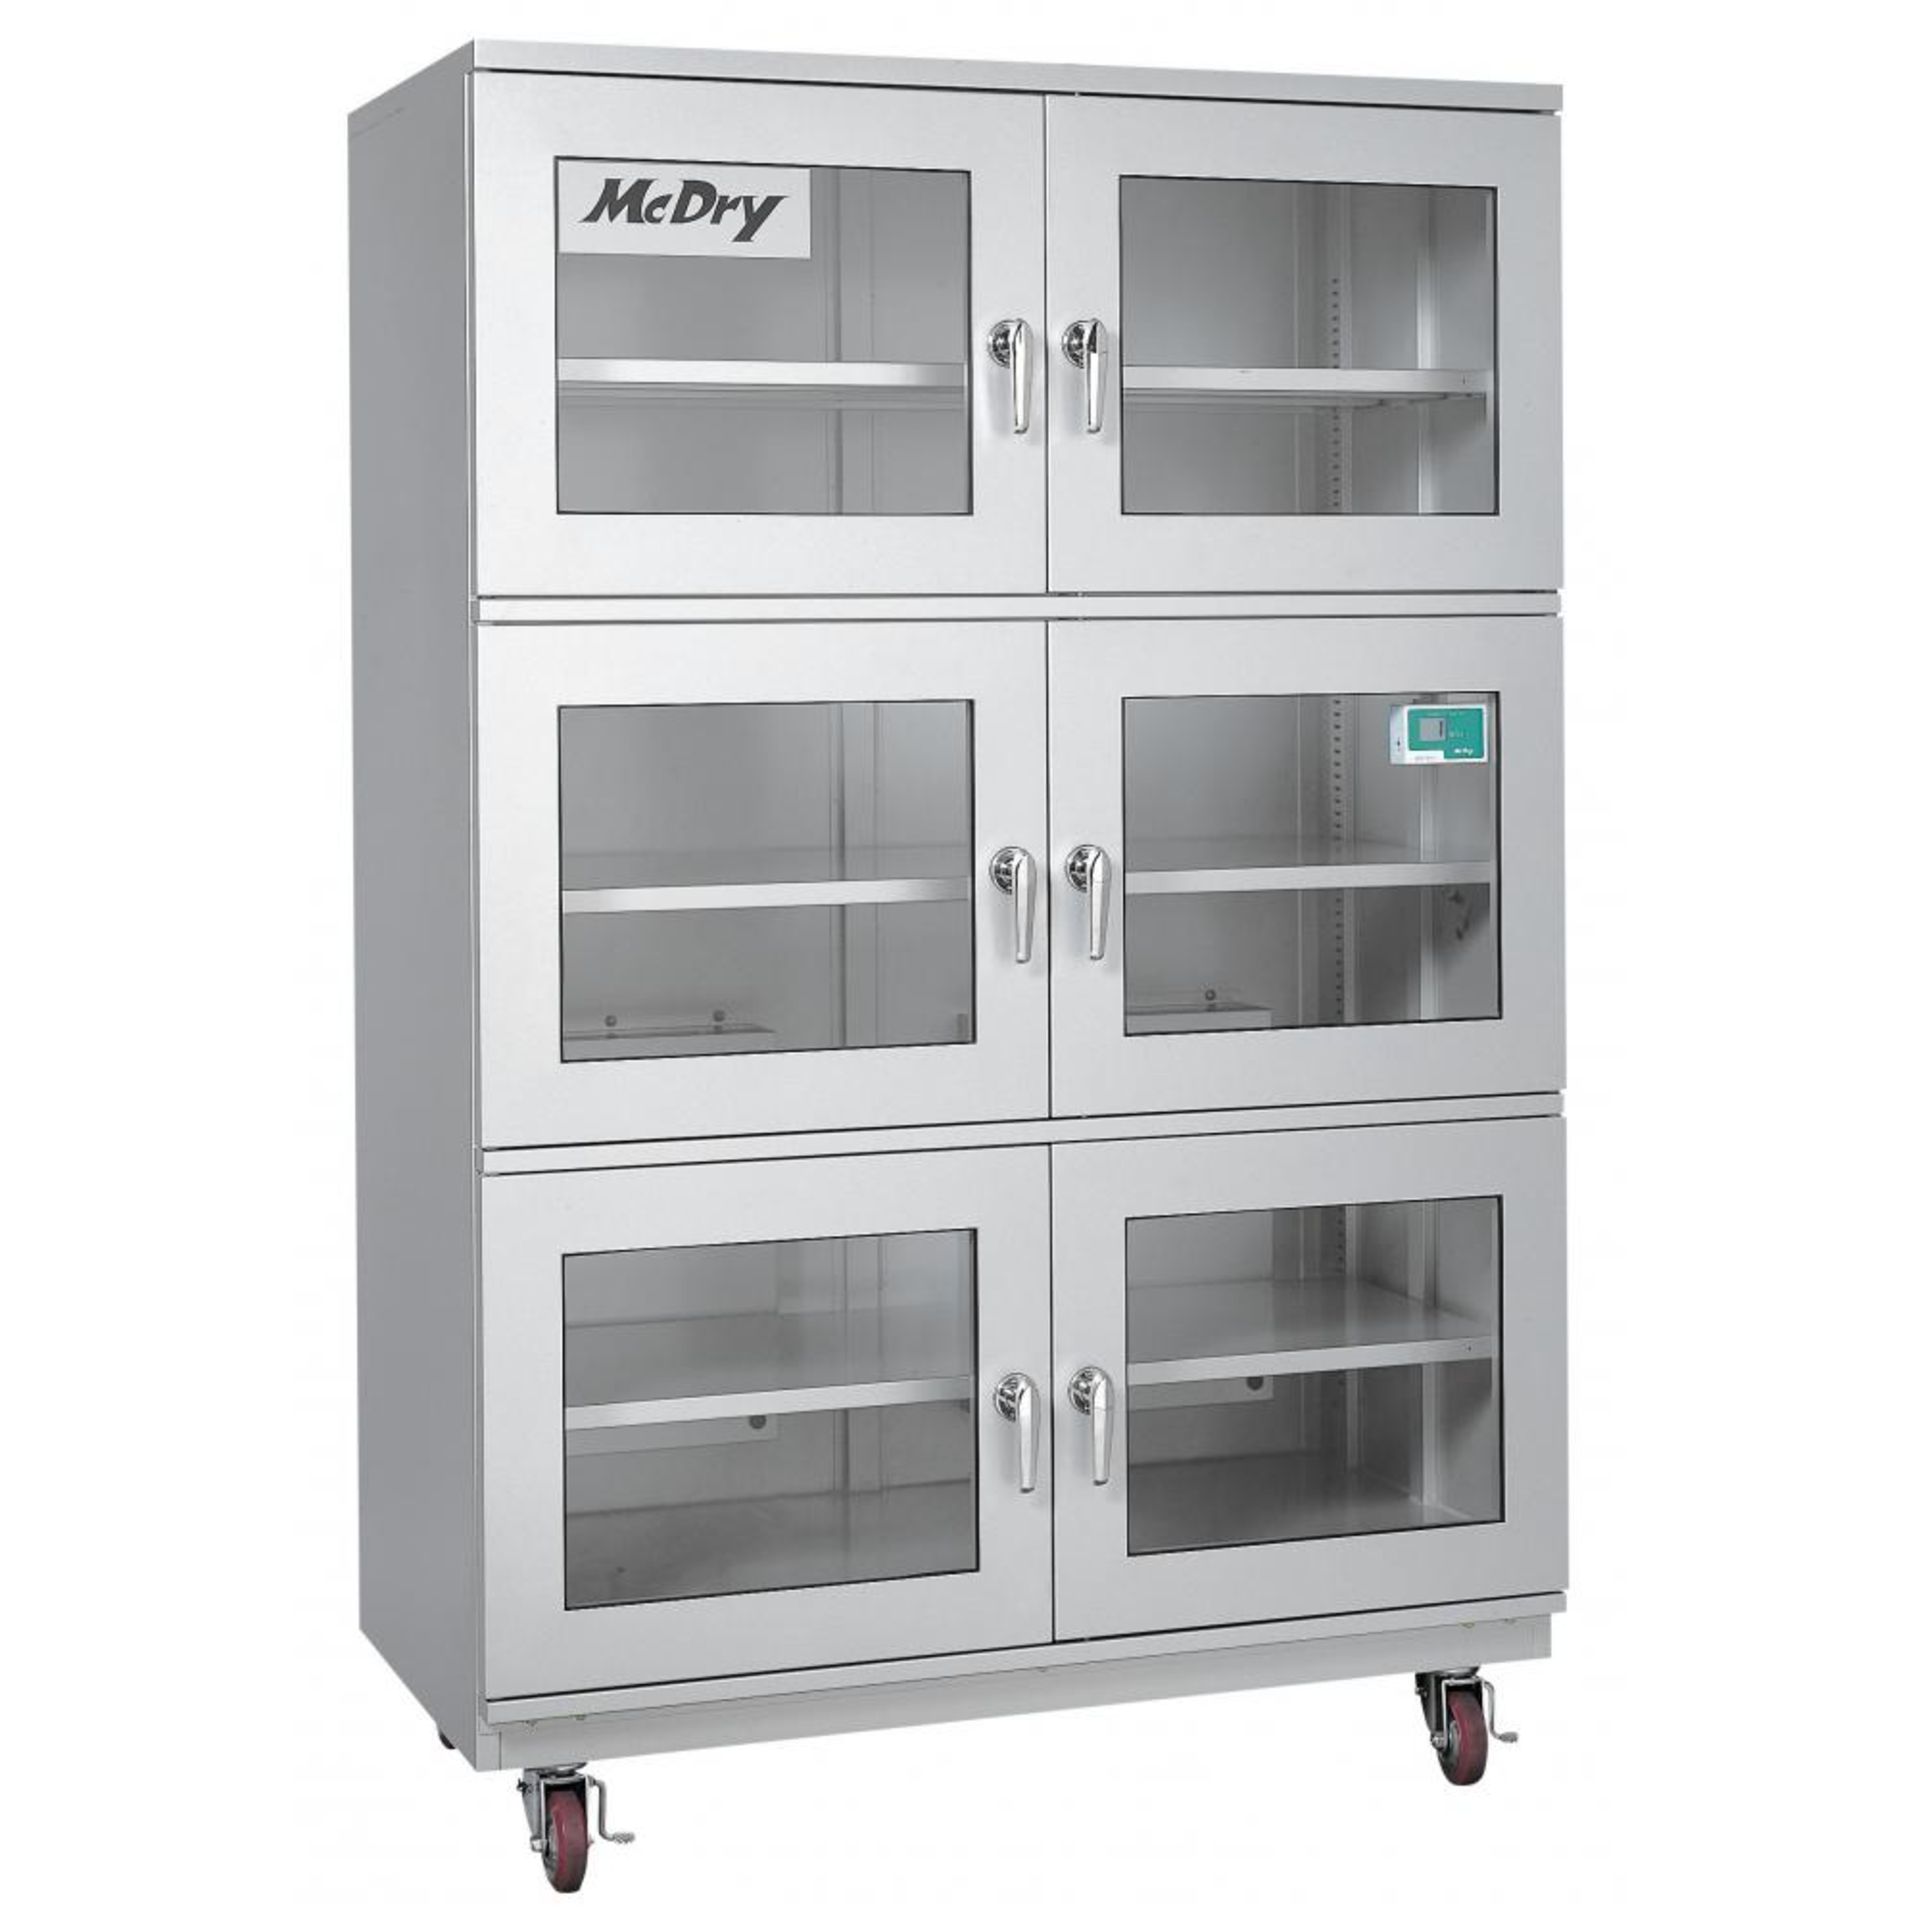 (New equipment in original packaging) StatPro 6-Door Dry Cabinet Dehumidifier, Model CPDC-6D, Seria